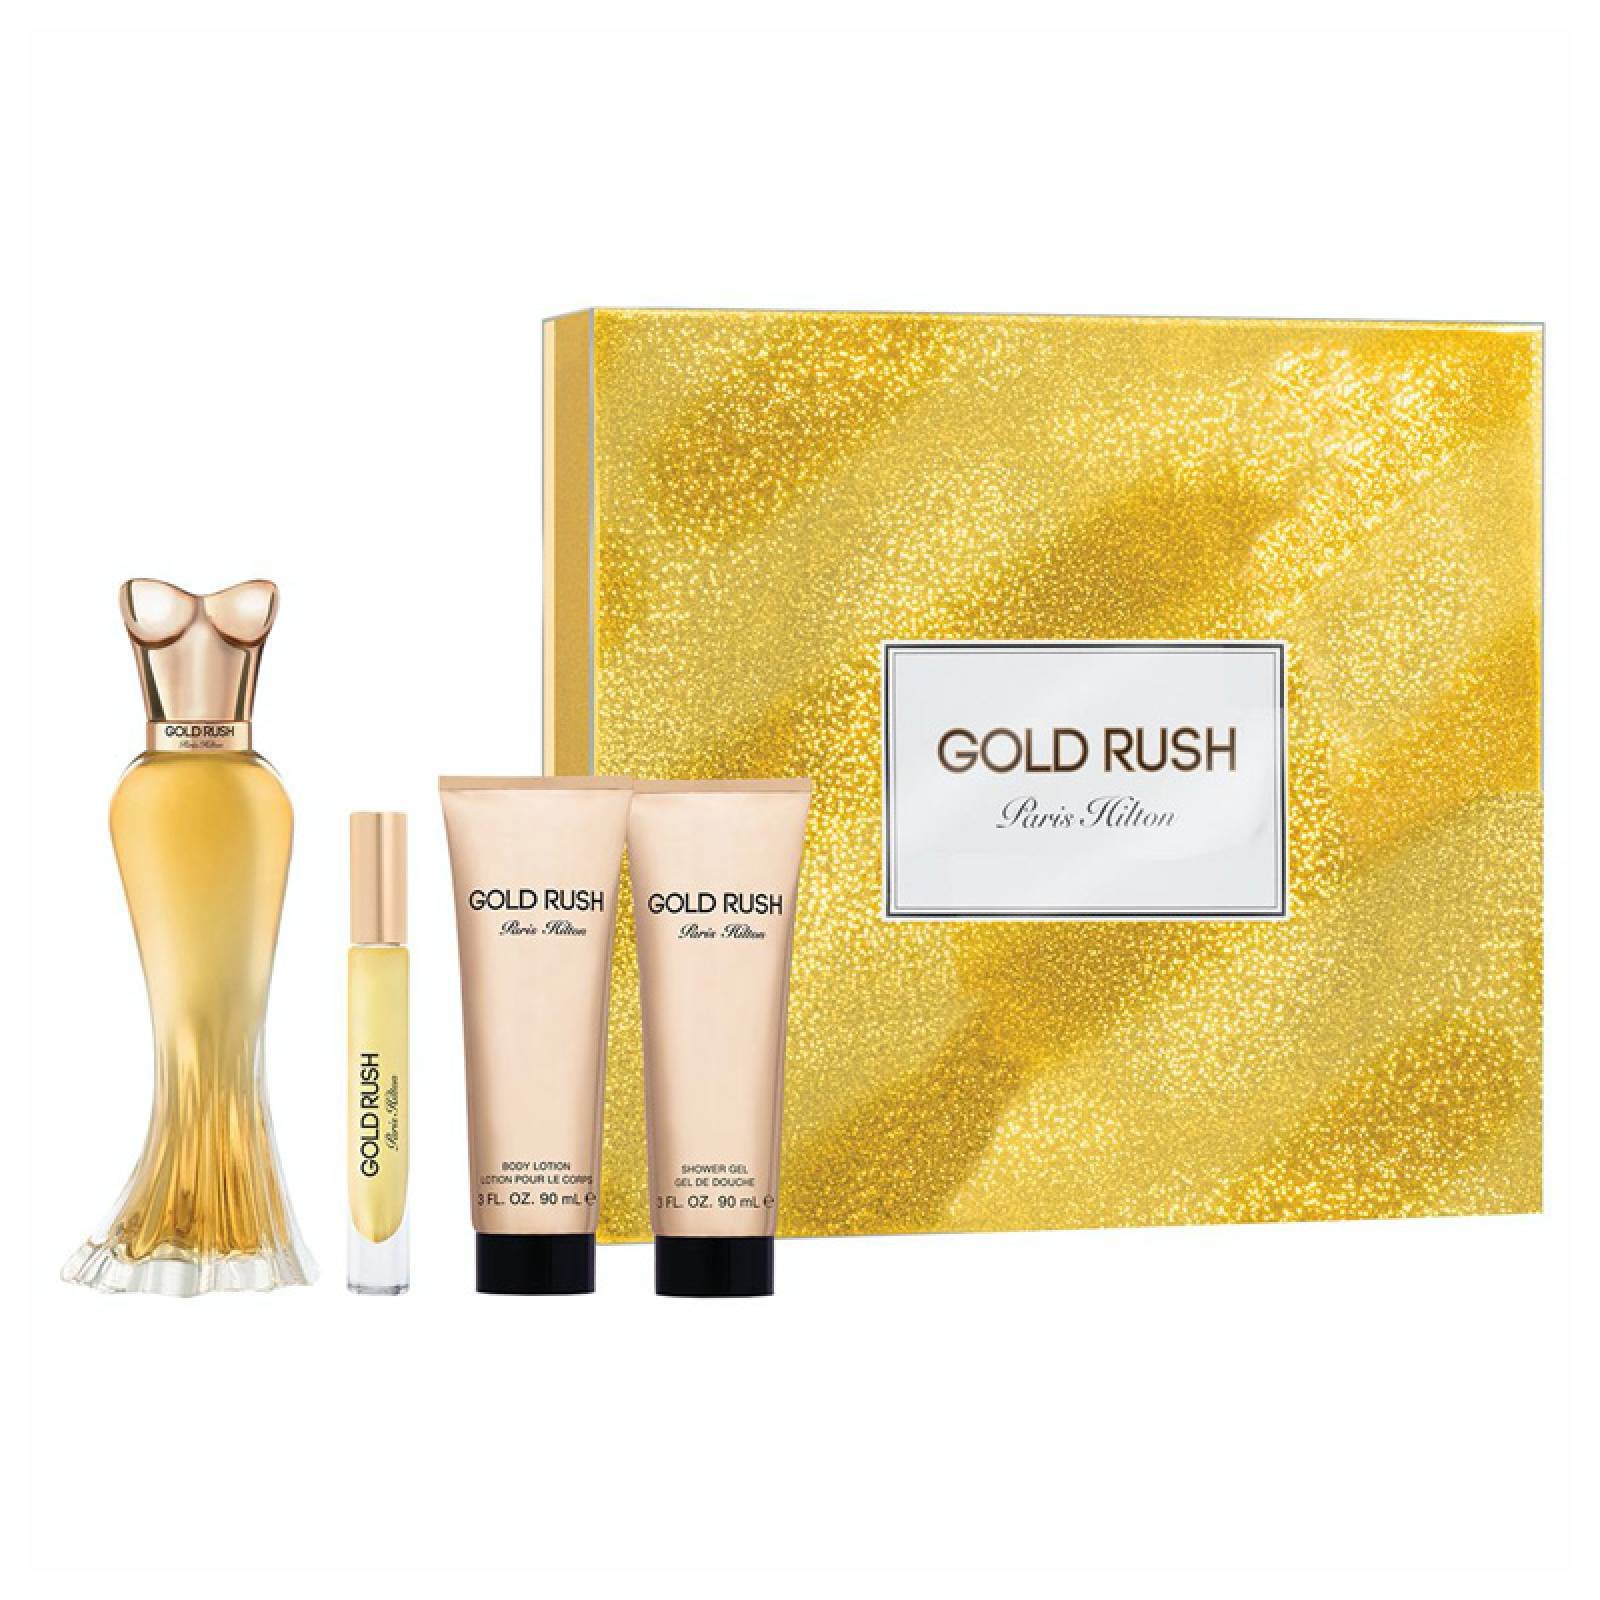 Paris Hilton Gold Rush Set